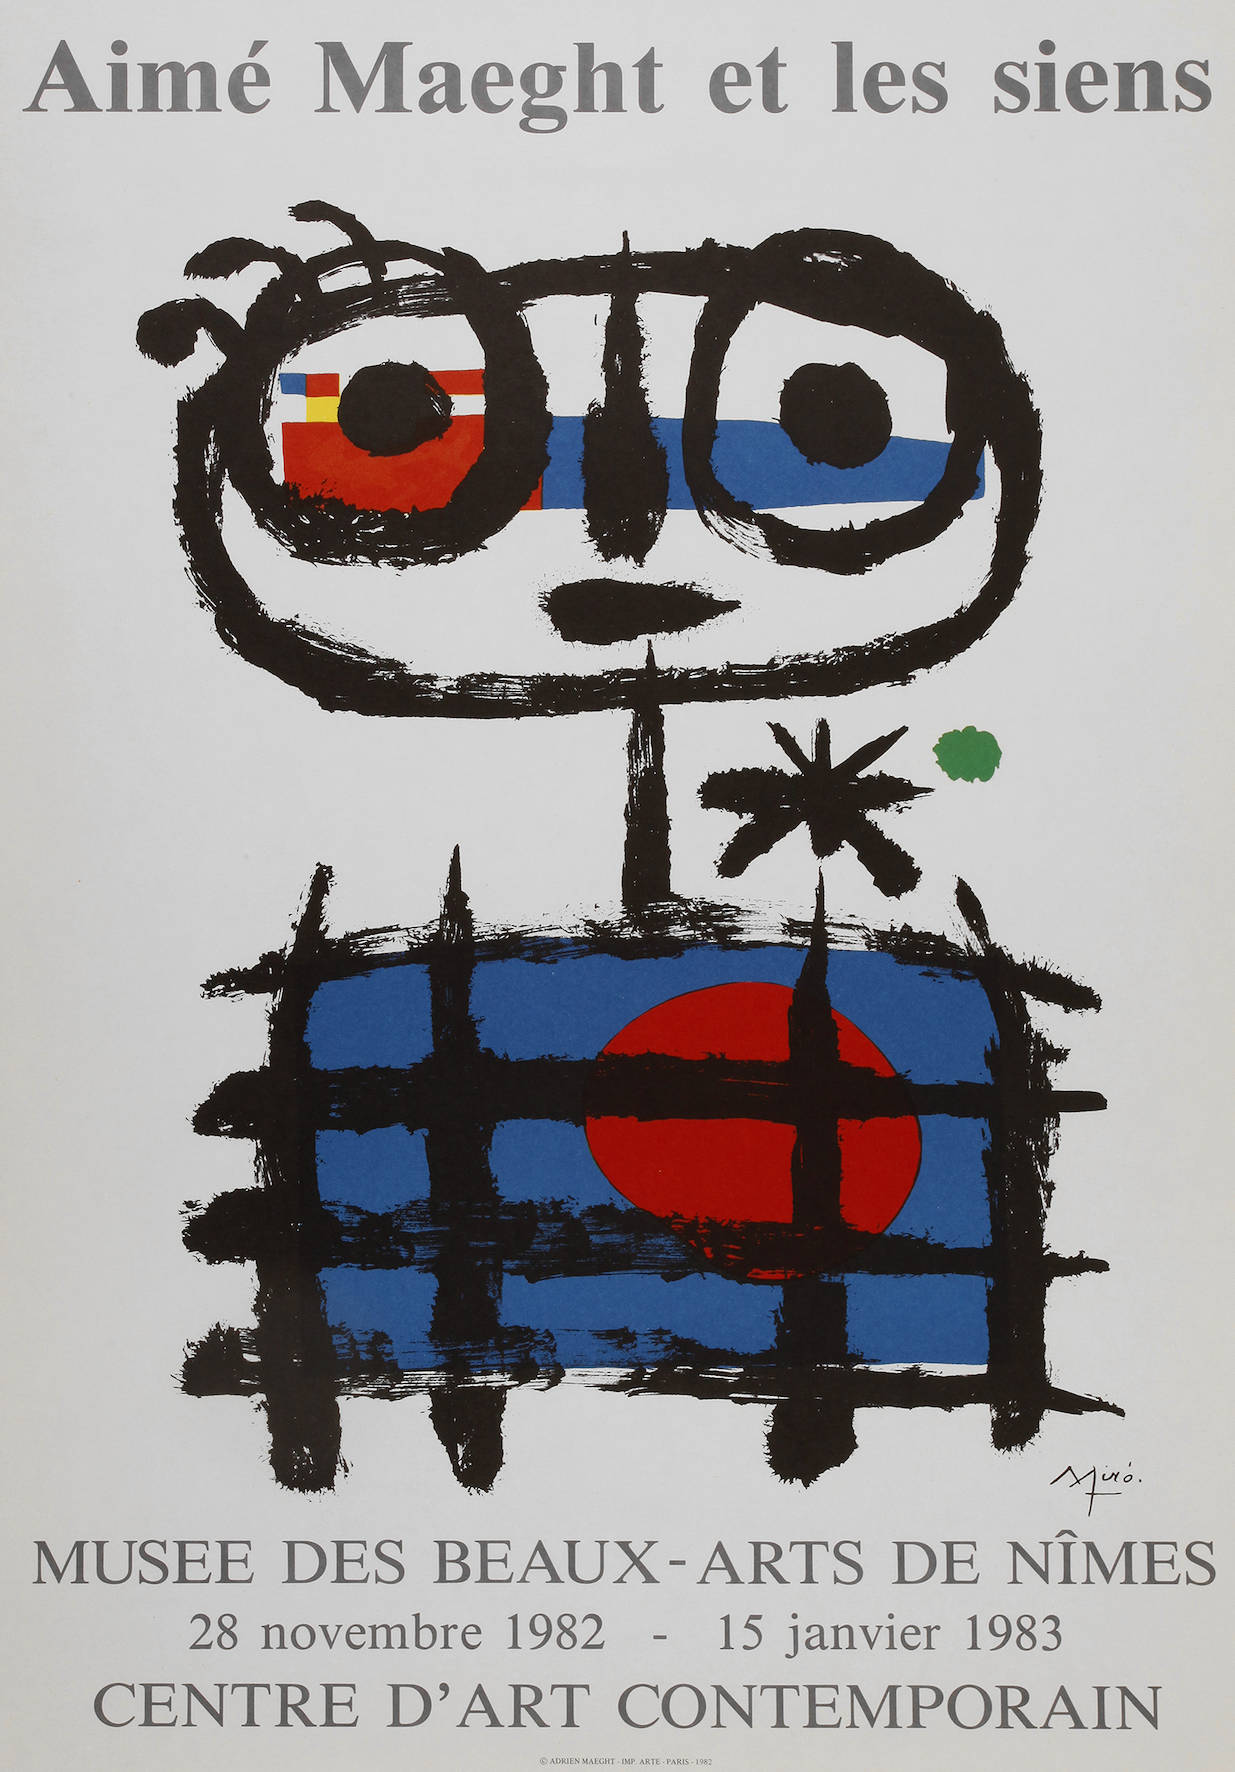 Joan Miró, ”Aimé Maeght et les siens”